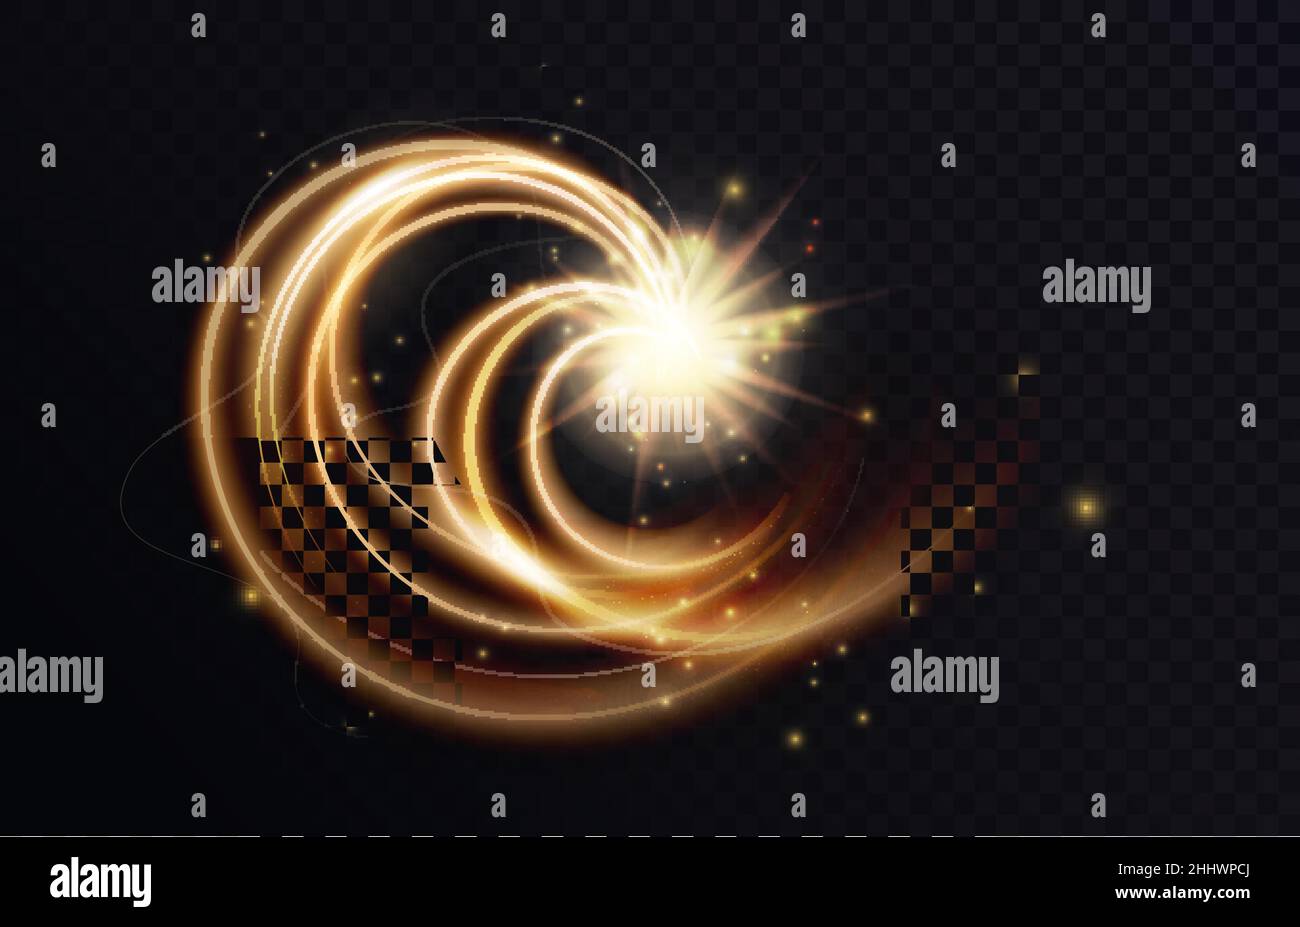 Golden Shimmering Swirl Vortex Or Spiral Glittering Star Dust